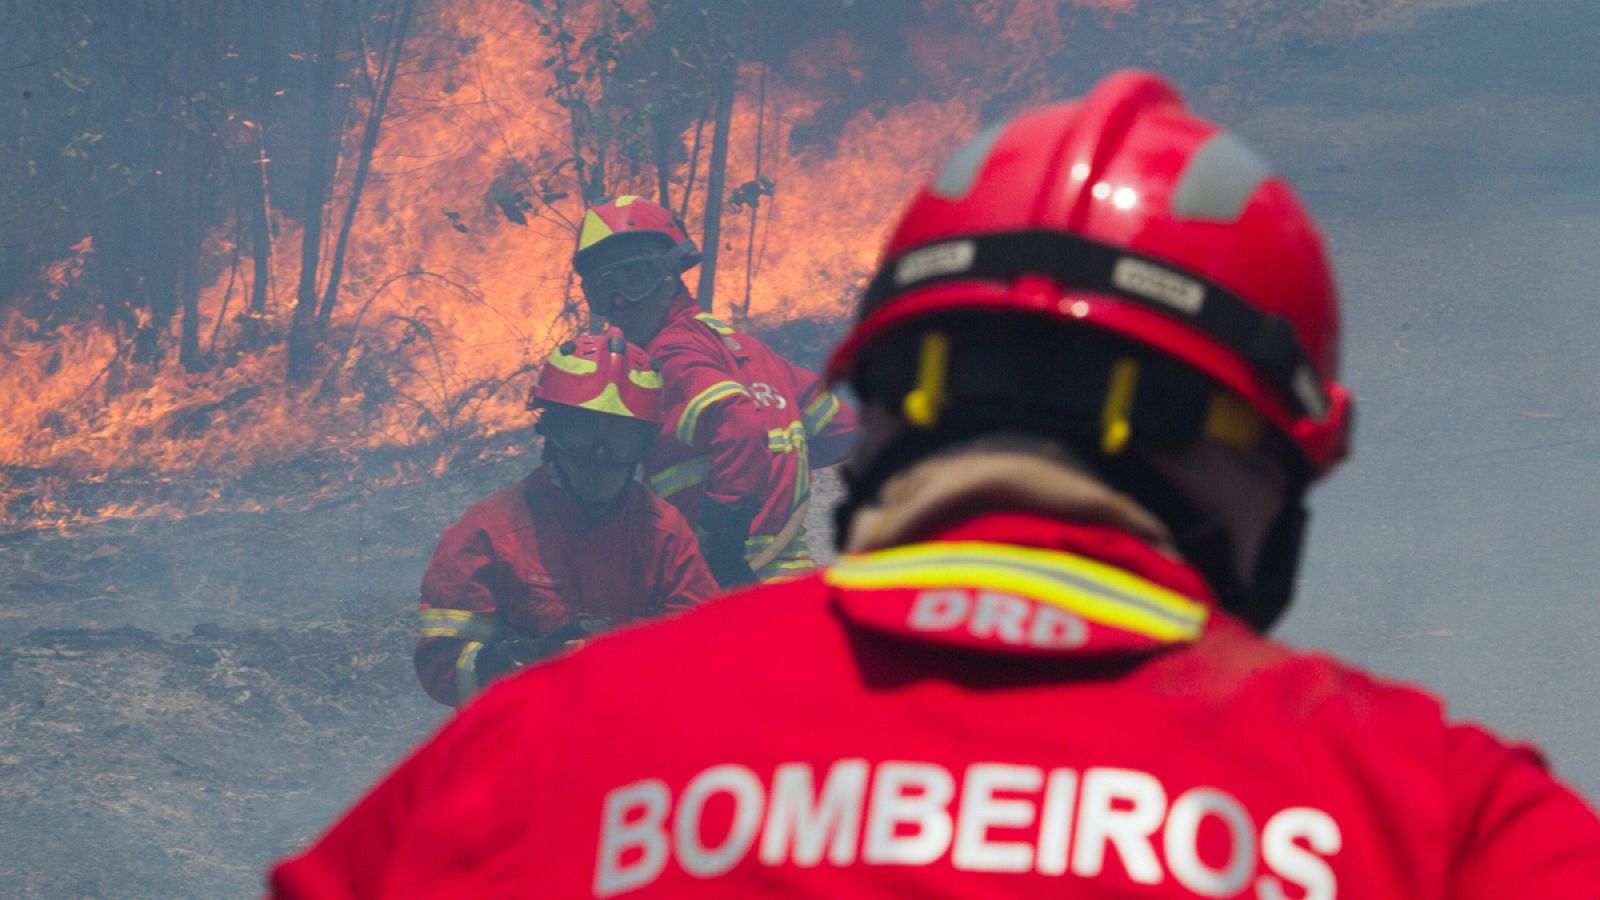 Incendio el pasado 18 de junio en Figueiro dos Vinhos.